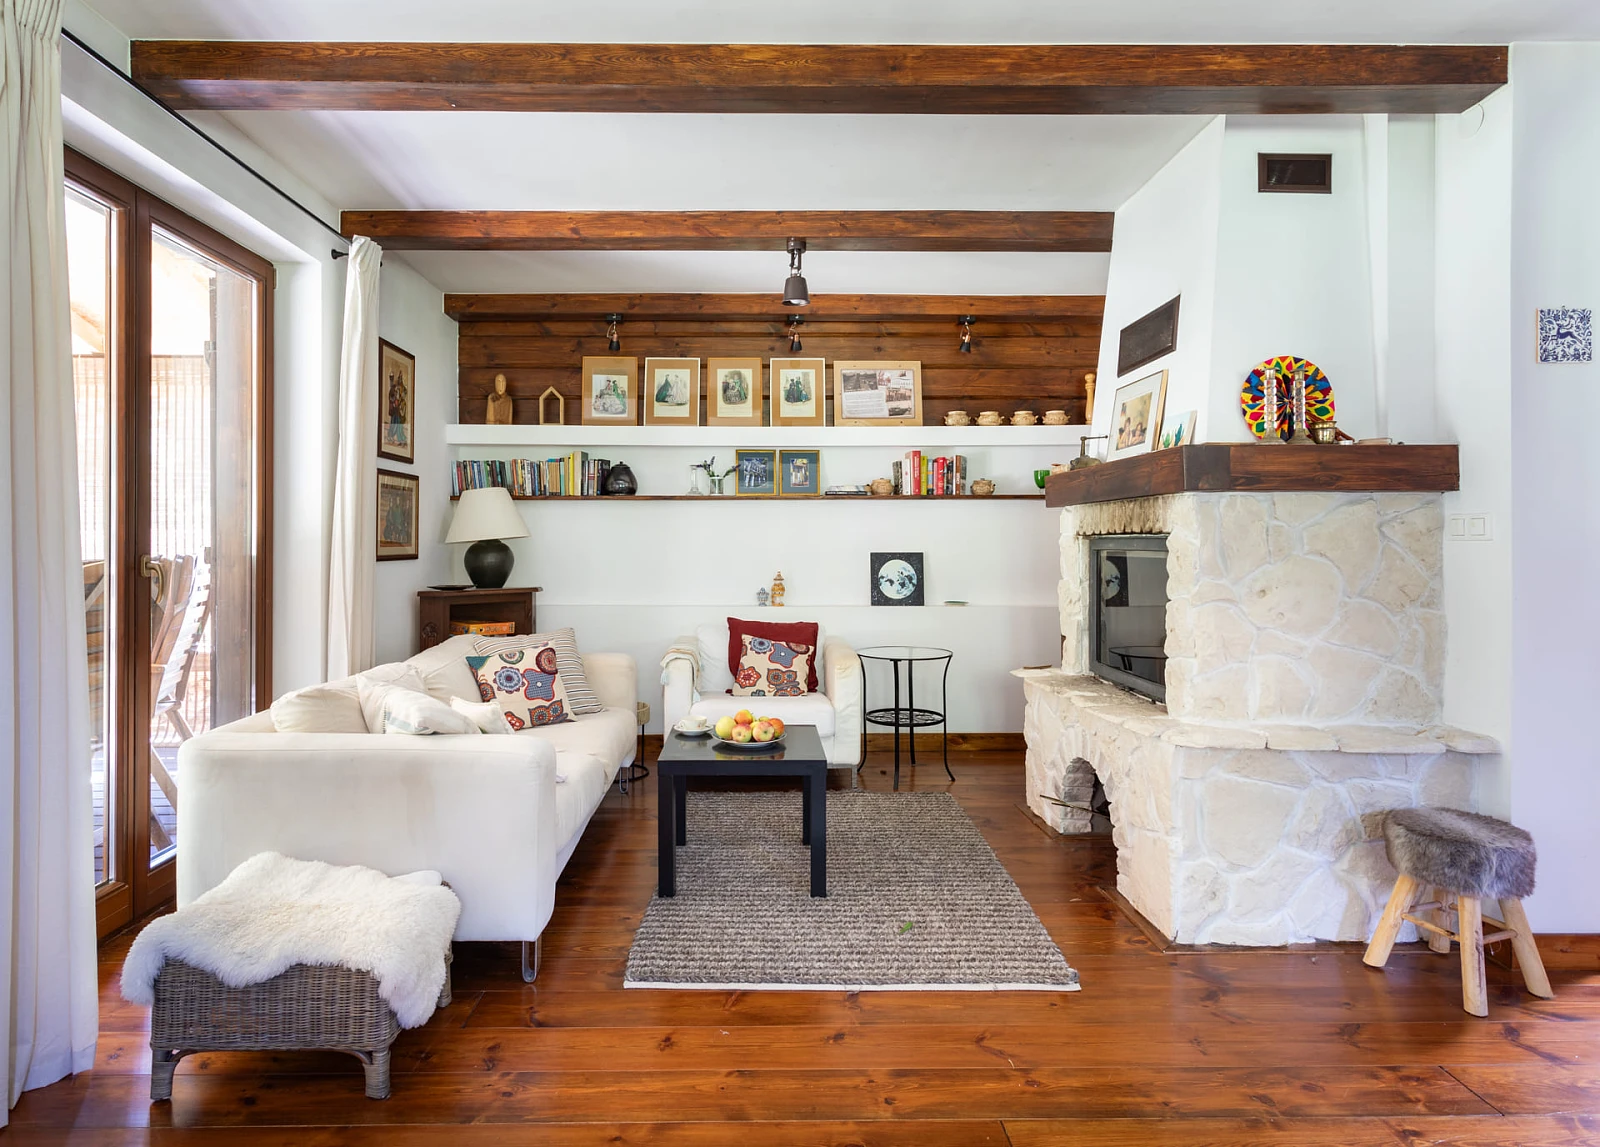  Jasny salon z drewnianymi elementami w stylu rustykalnym.